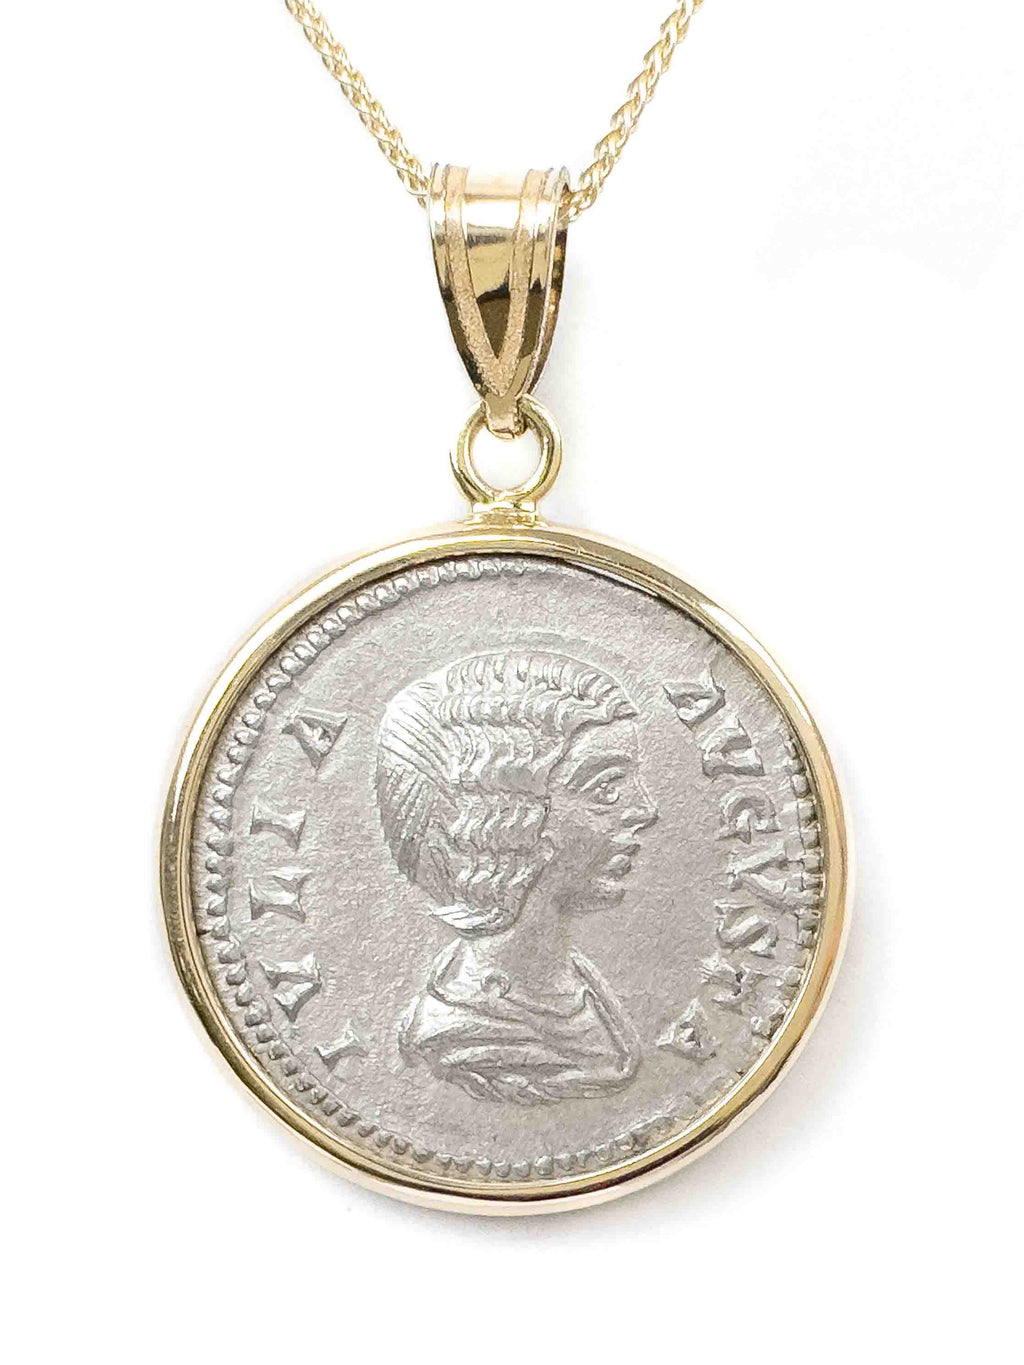 Vintage JULIA DOMNA 18k Rose & White Gold Diamond Medallion Pendant $5500  Retail